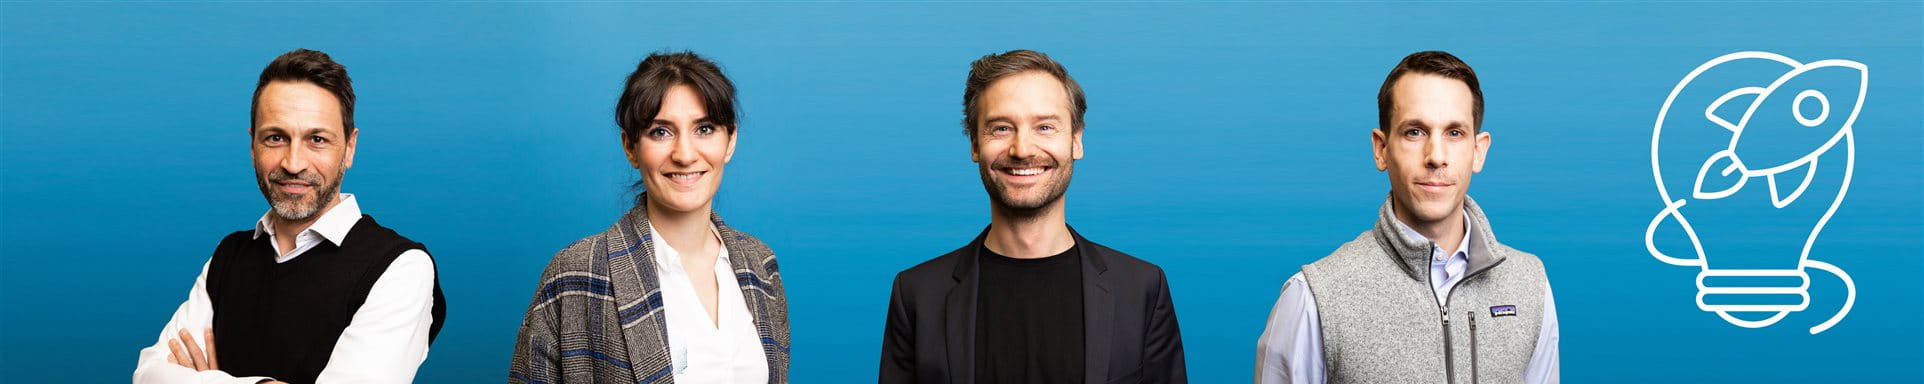 Protagonisti dello Zurich Innovation Championship in Svizzera